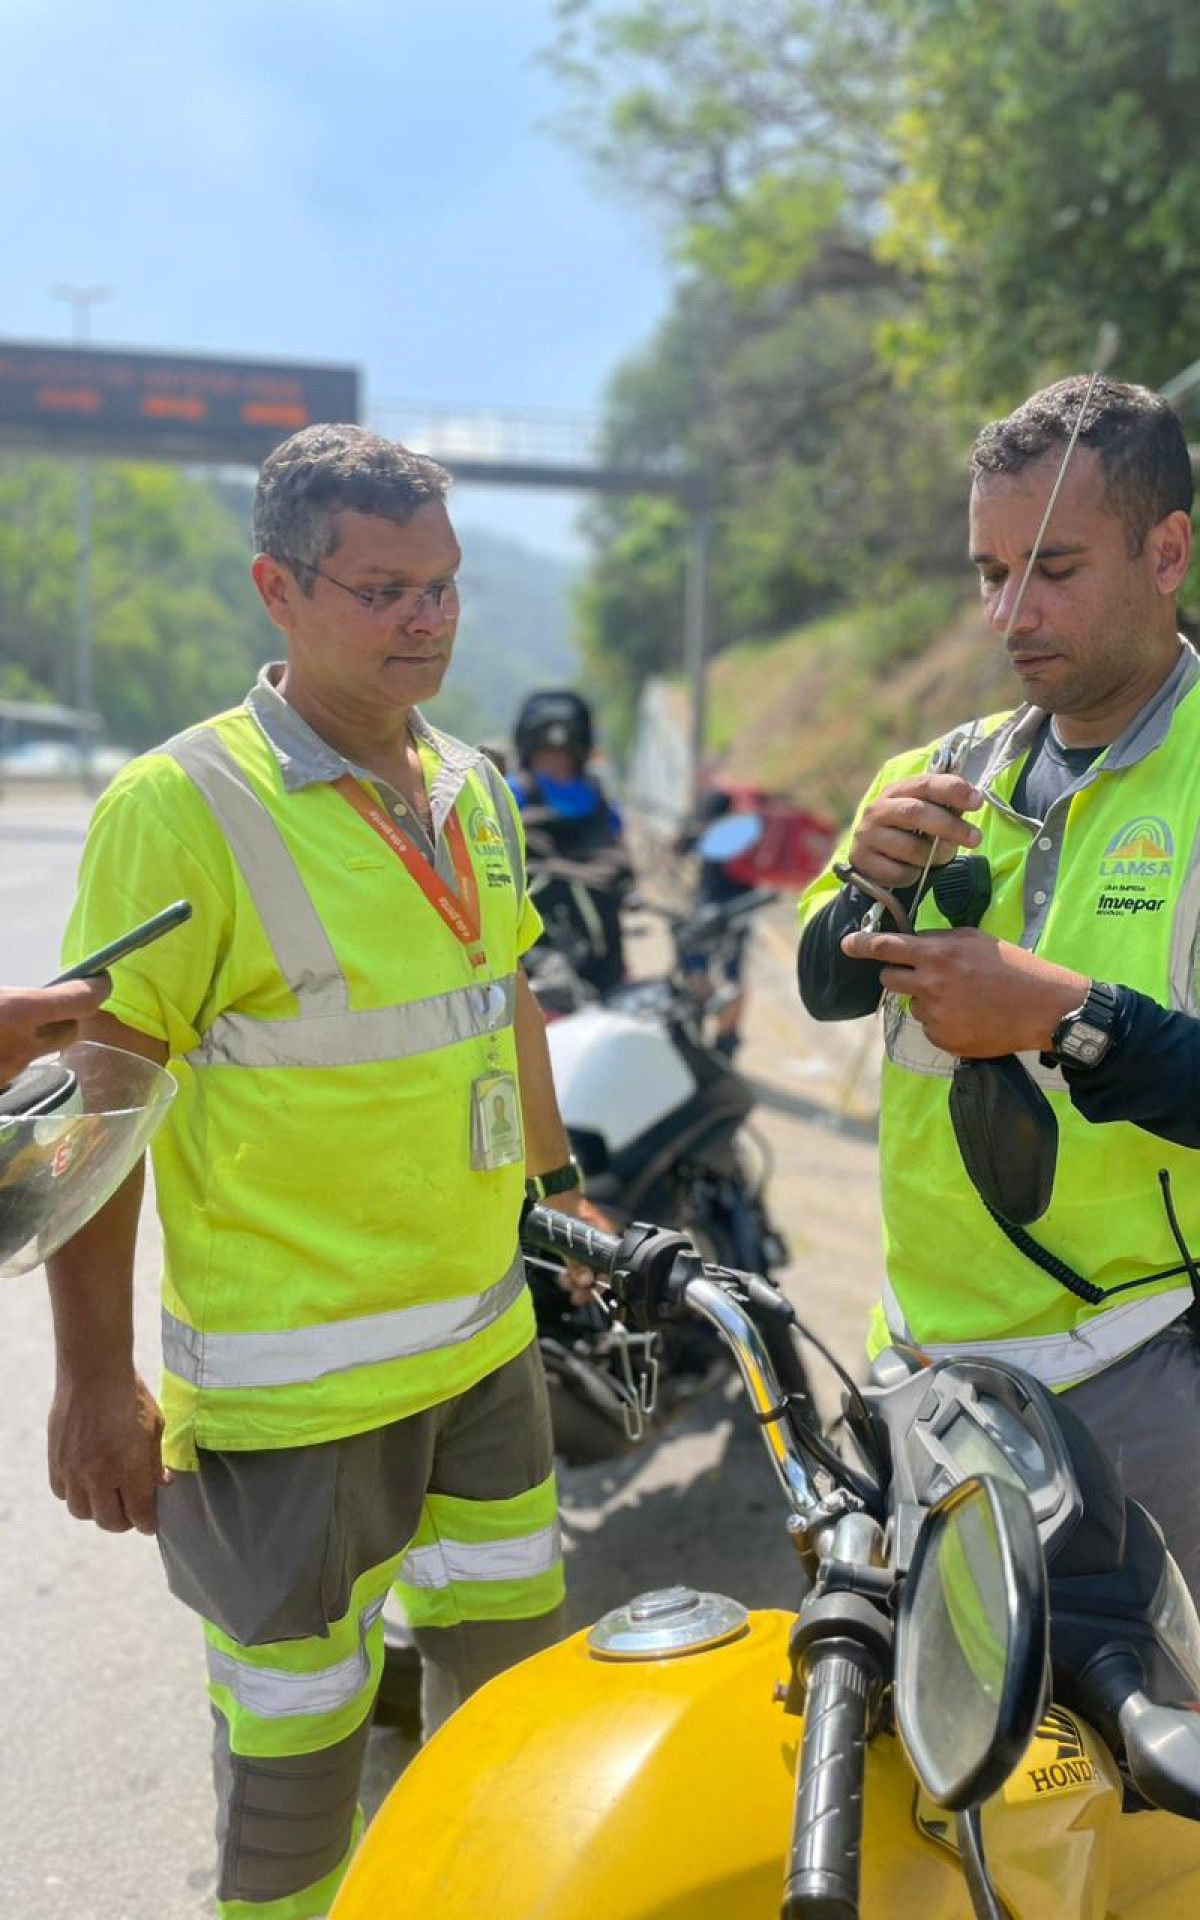 Equipe da Lamsa distribui antenas antilinha para motociclistas na Linha Amarela - Divulgação